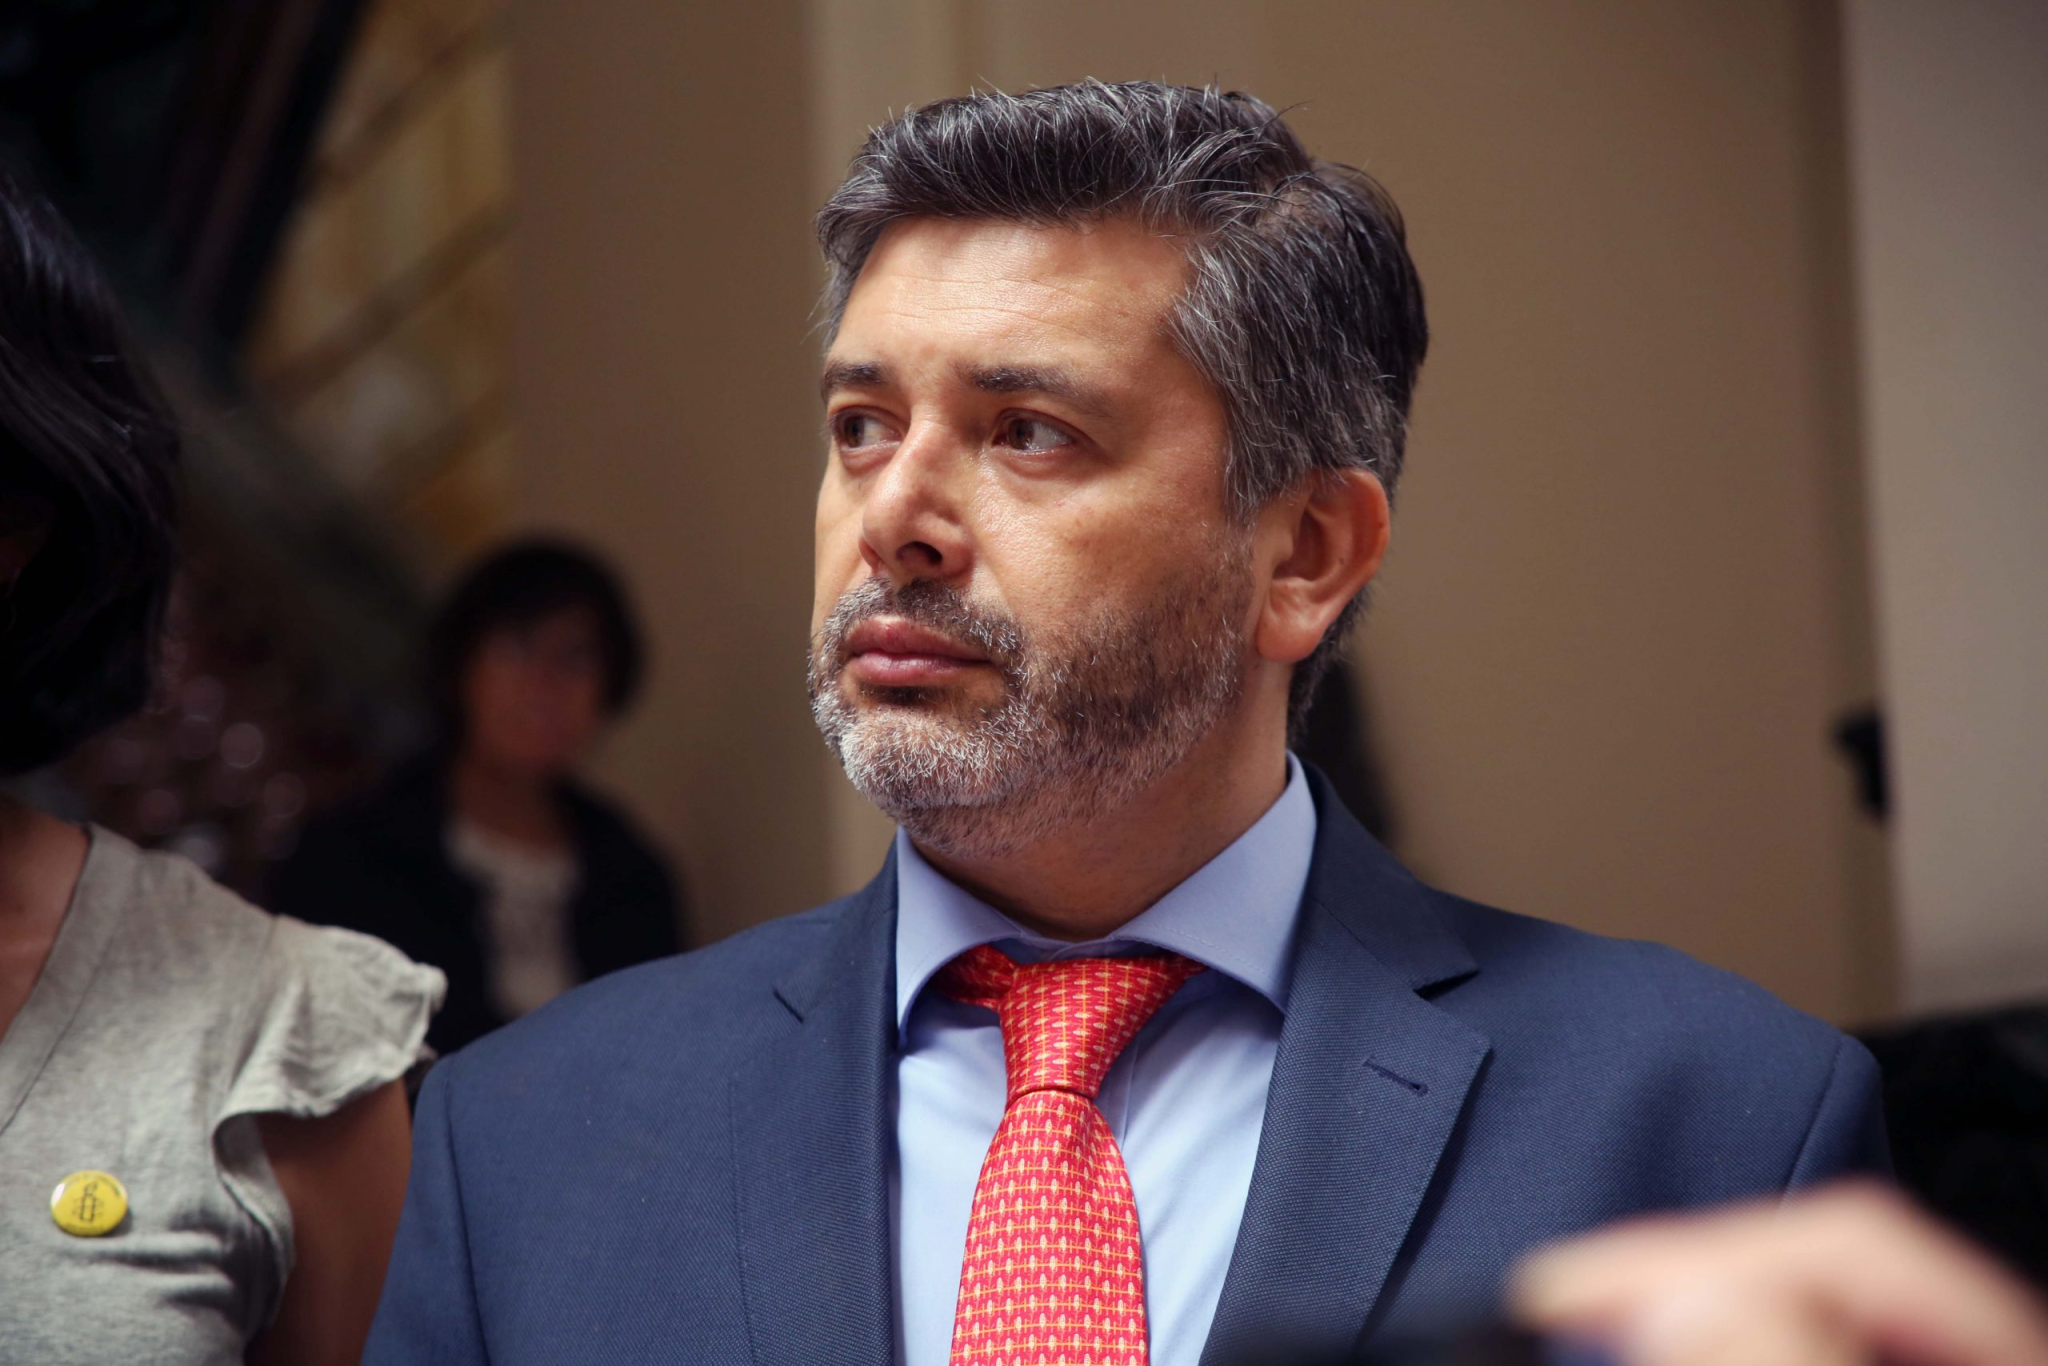 Asociación de Abogados de Derechos Humanos por persecución al juez Urrutia: “Pone en riesgo a la institucionalidad democrática de Chile”